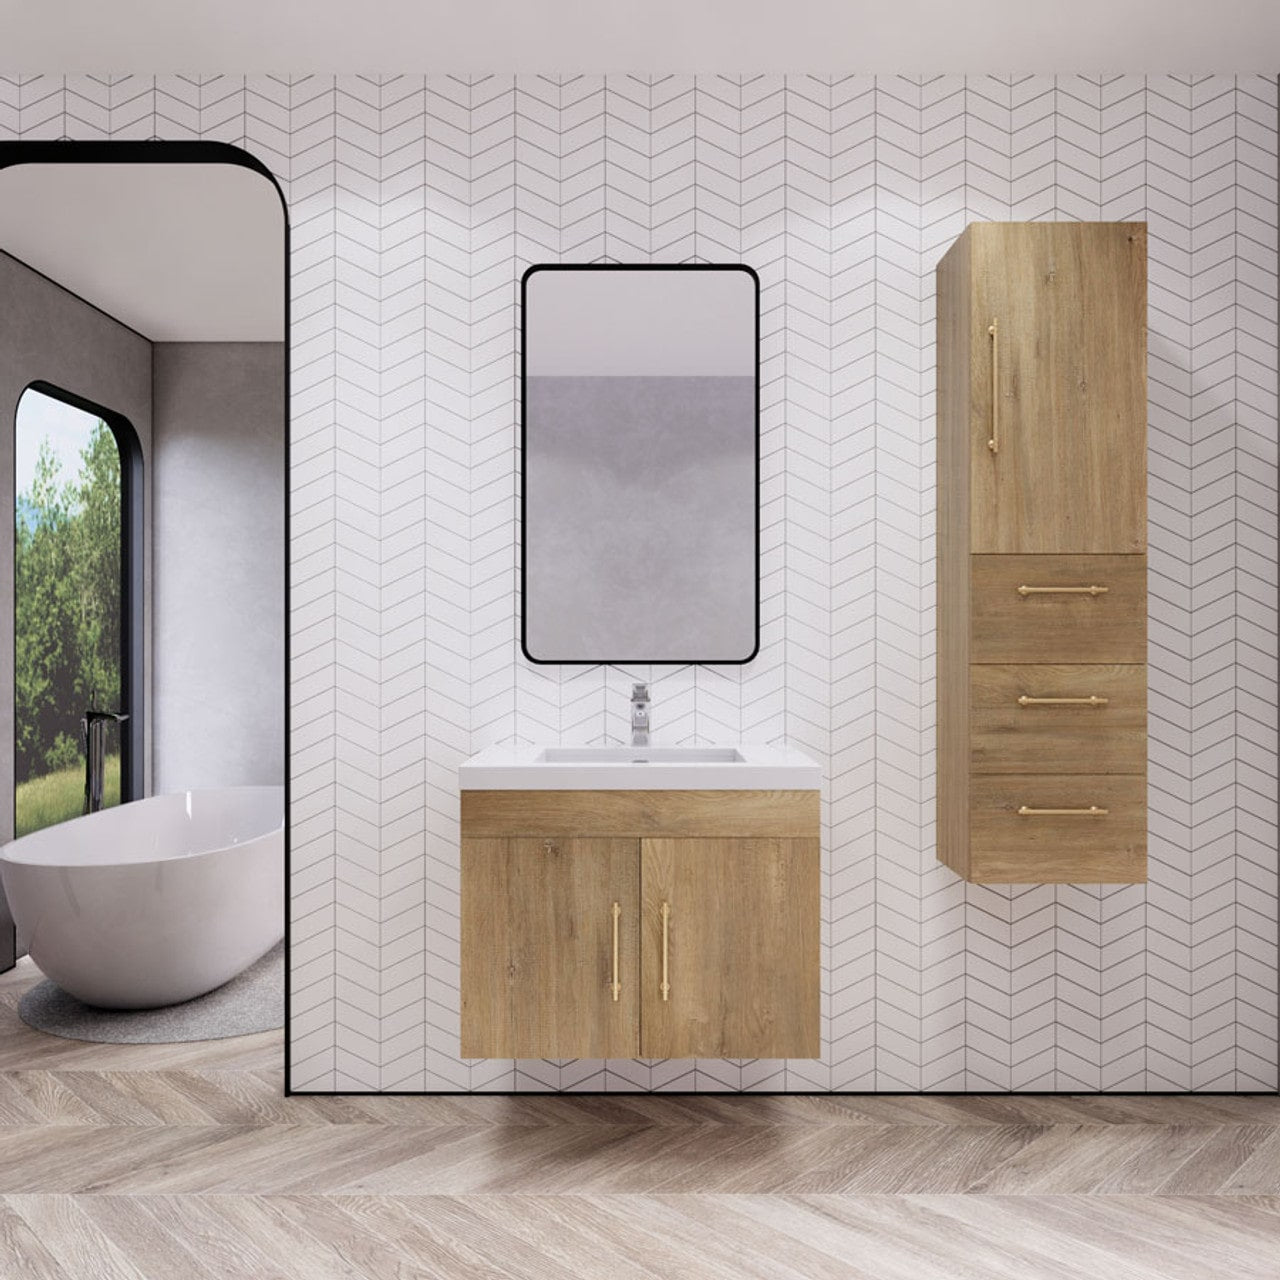 Eliza 30'' Bathroom Vanity with Acrylic Top - Luxury Bathroom Vanity